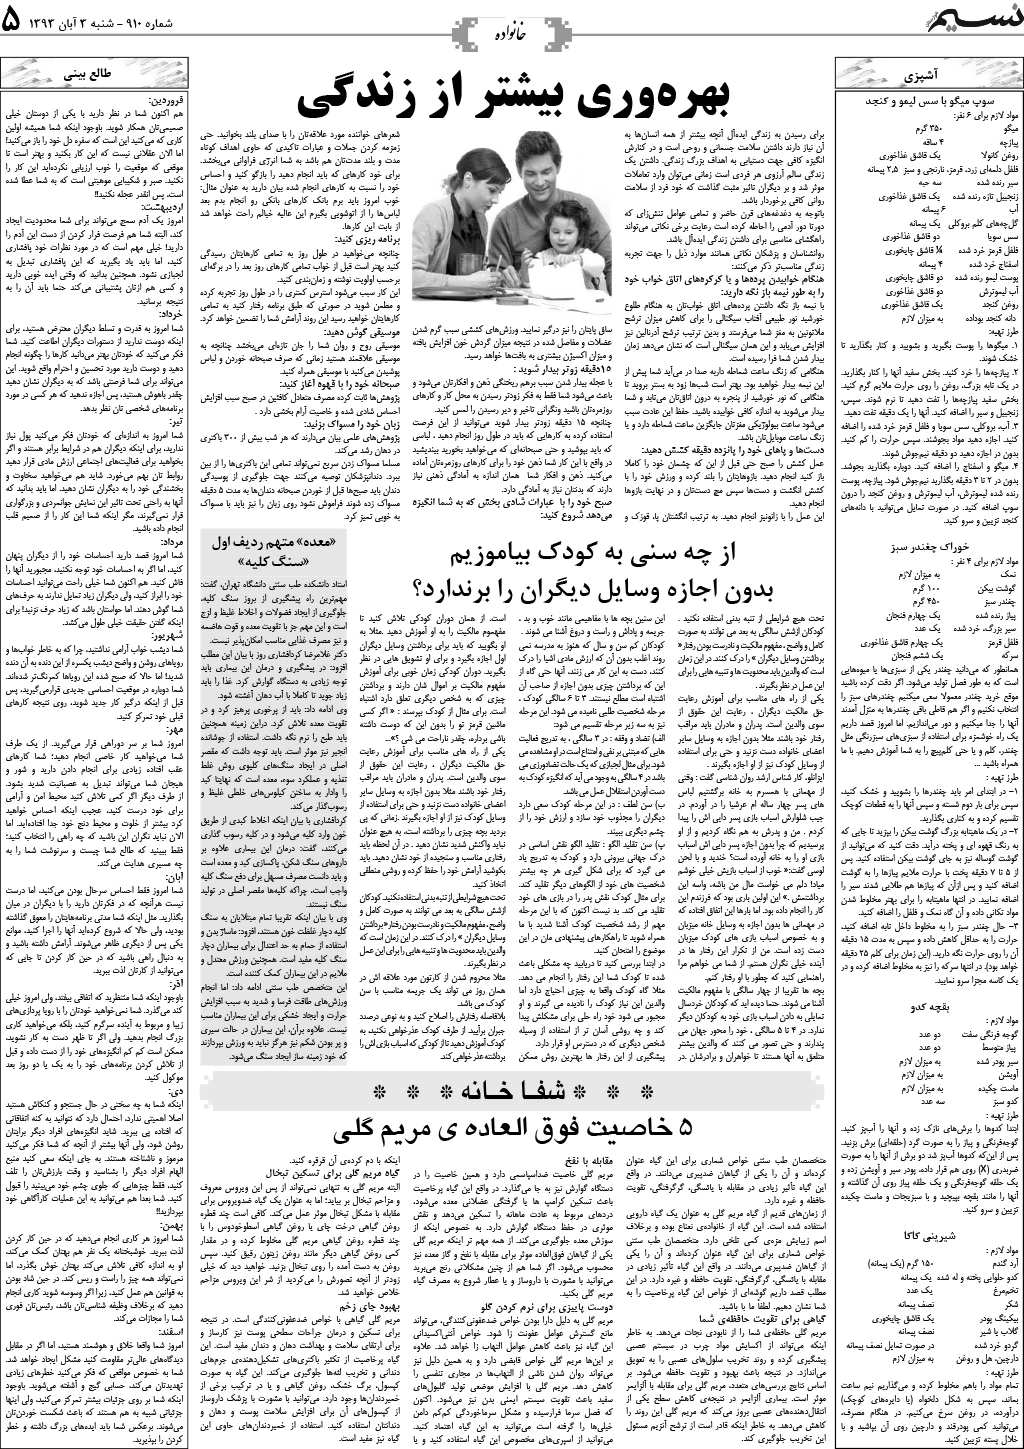 صفحه خانواده روزنامه نسیم شماره 910